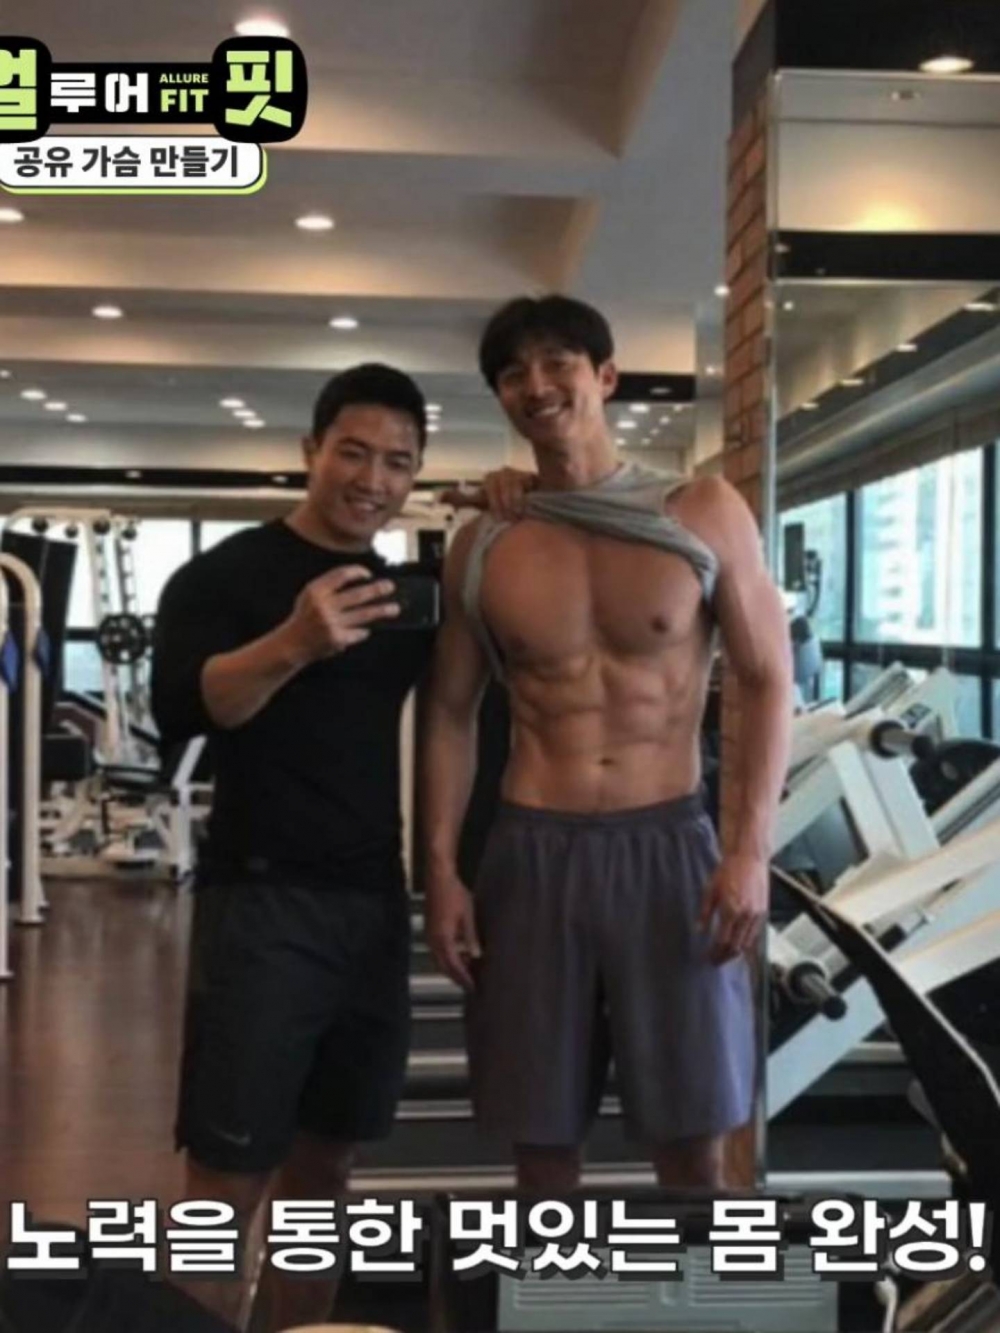 好友兼健身教練尹泰錫(윤태식)曾分享孔劉的肌肉照